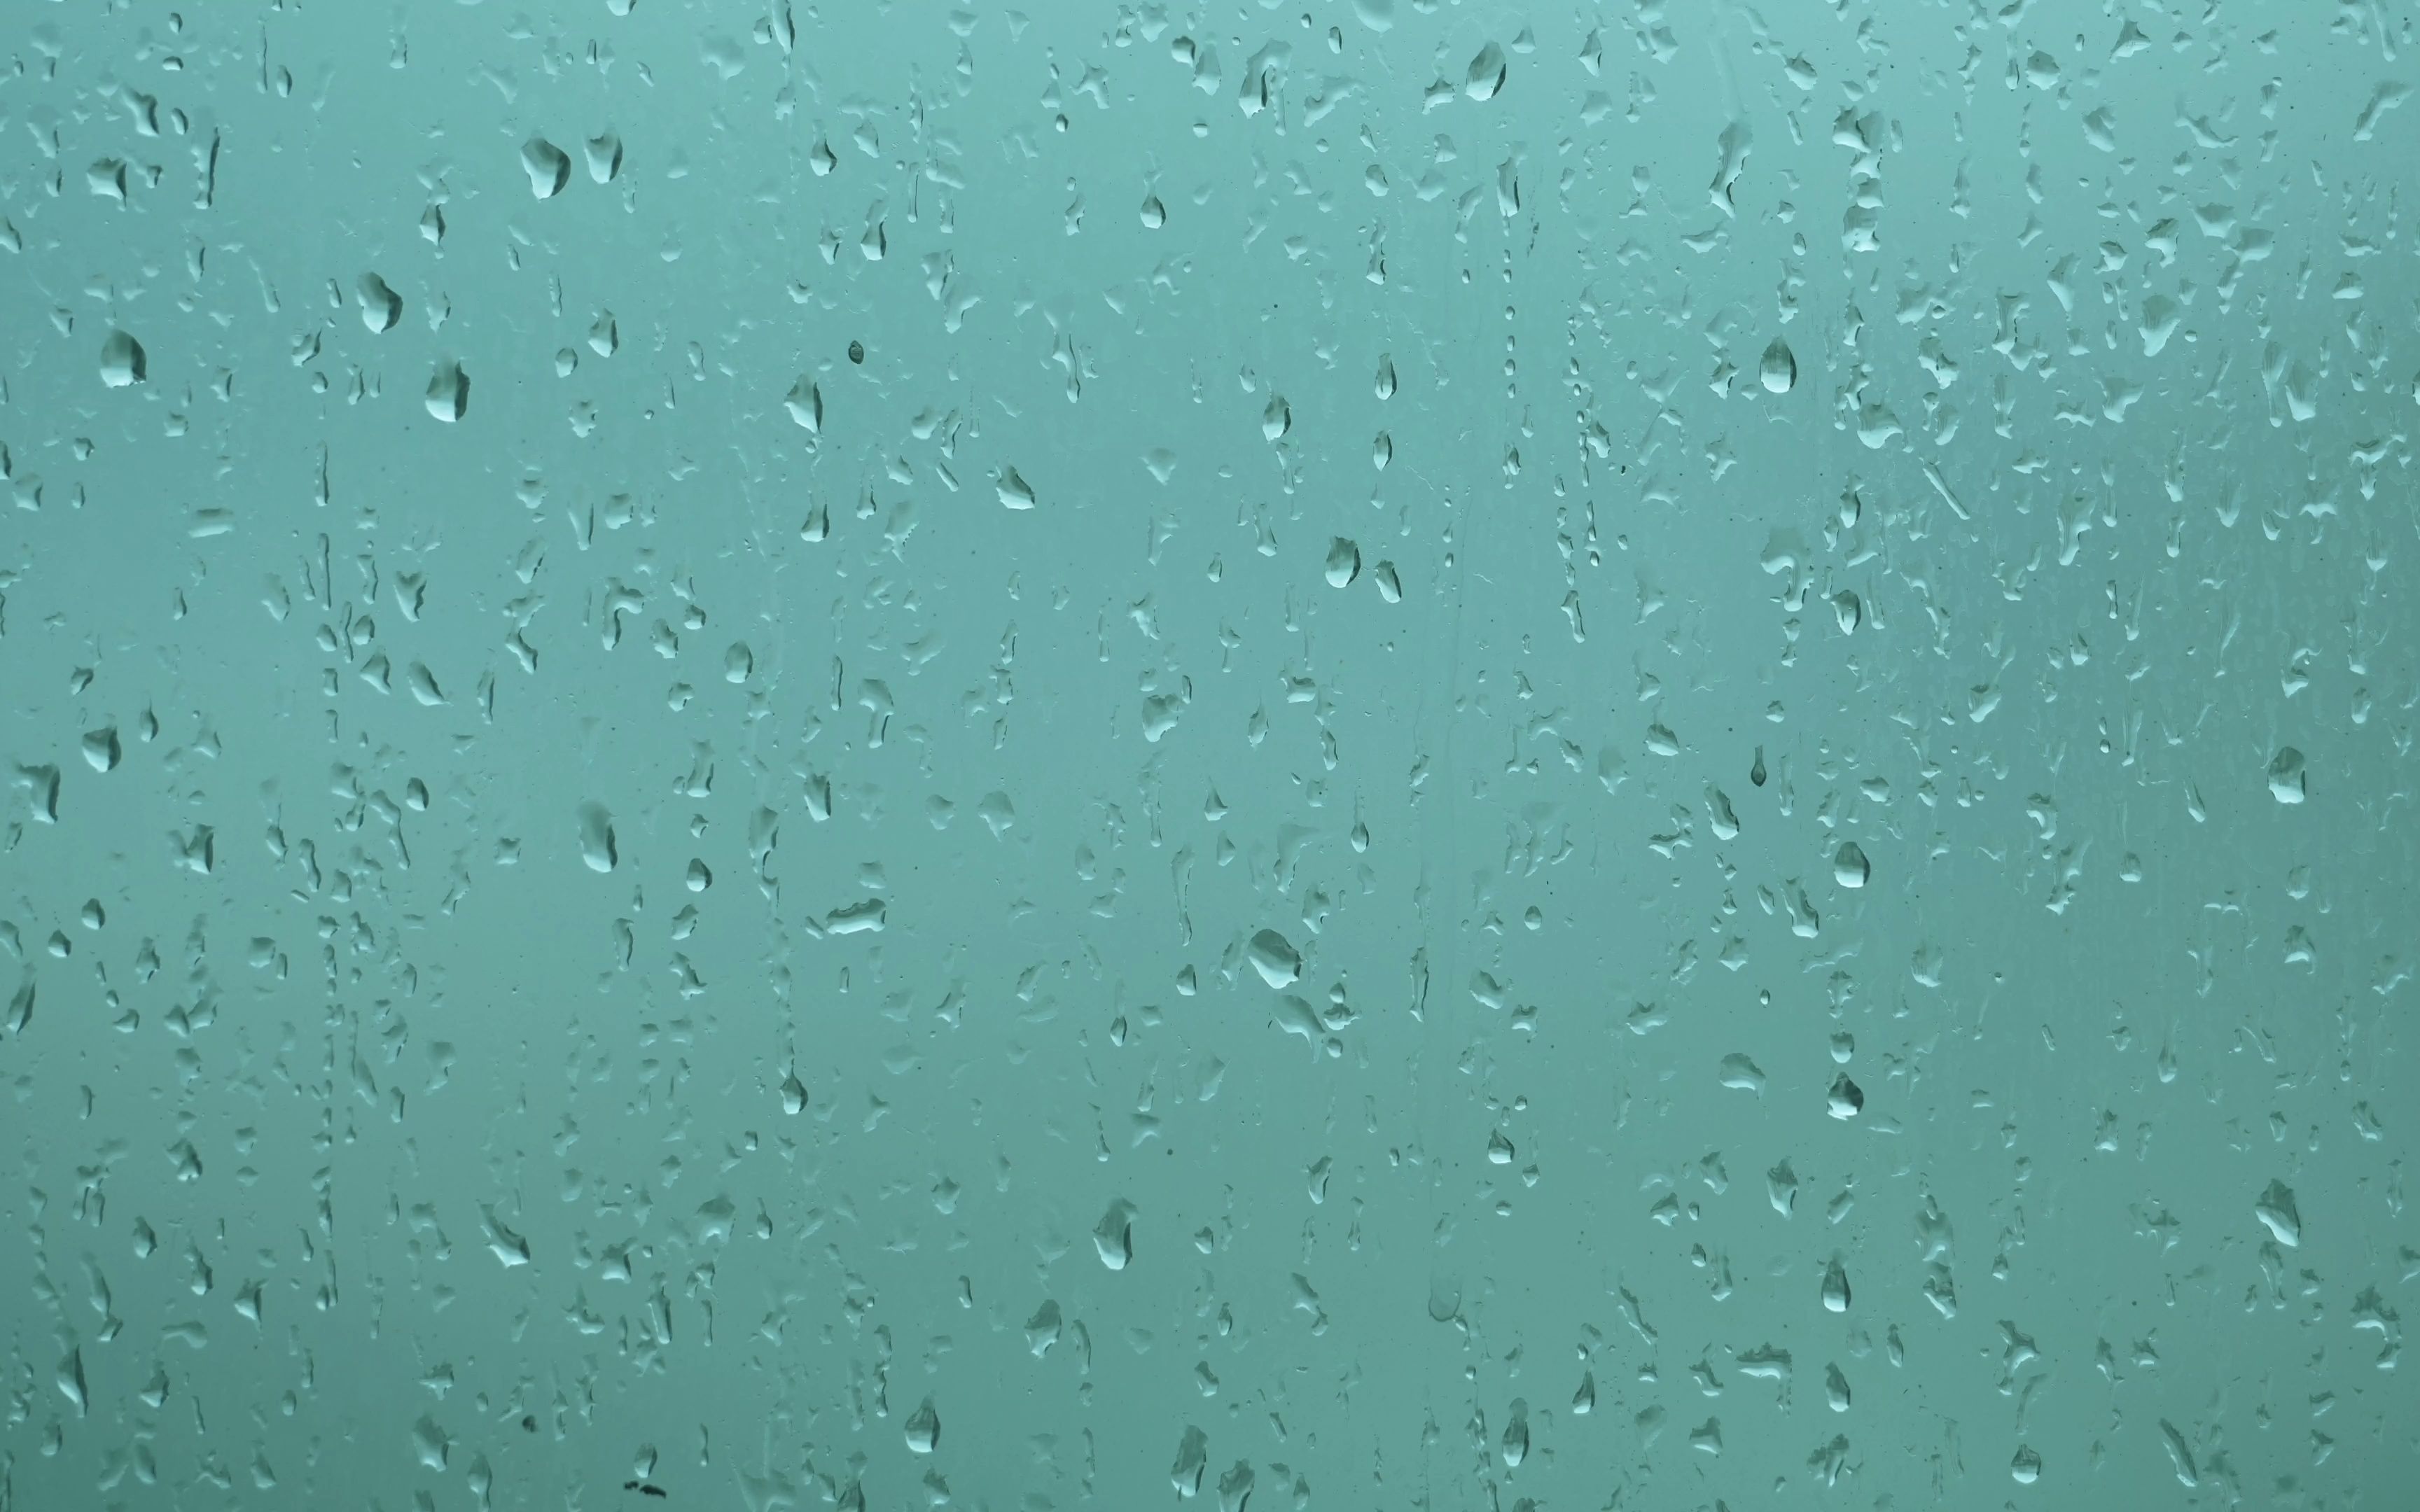 拍了个雨天玻璃片段